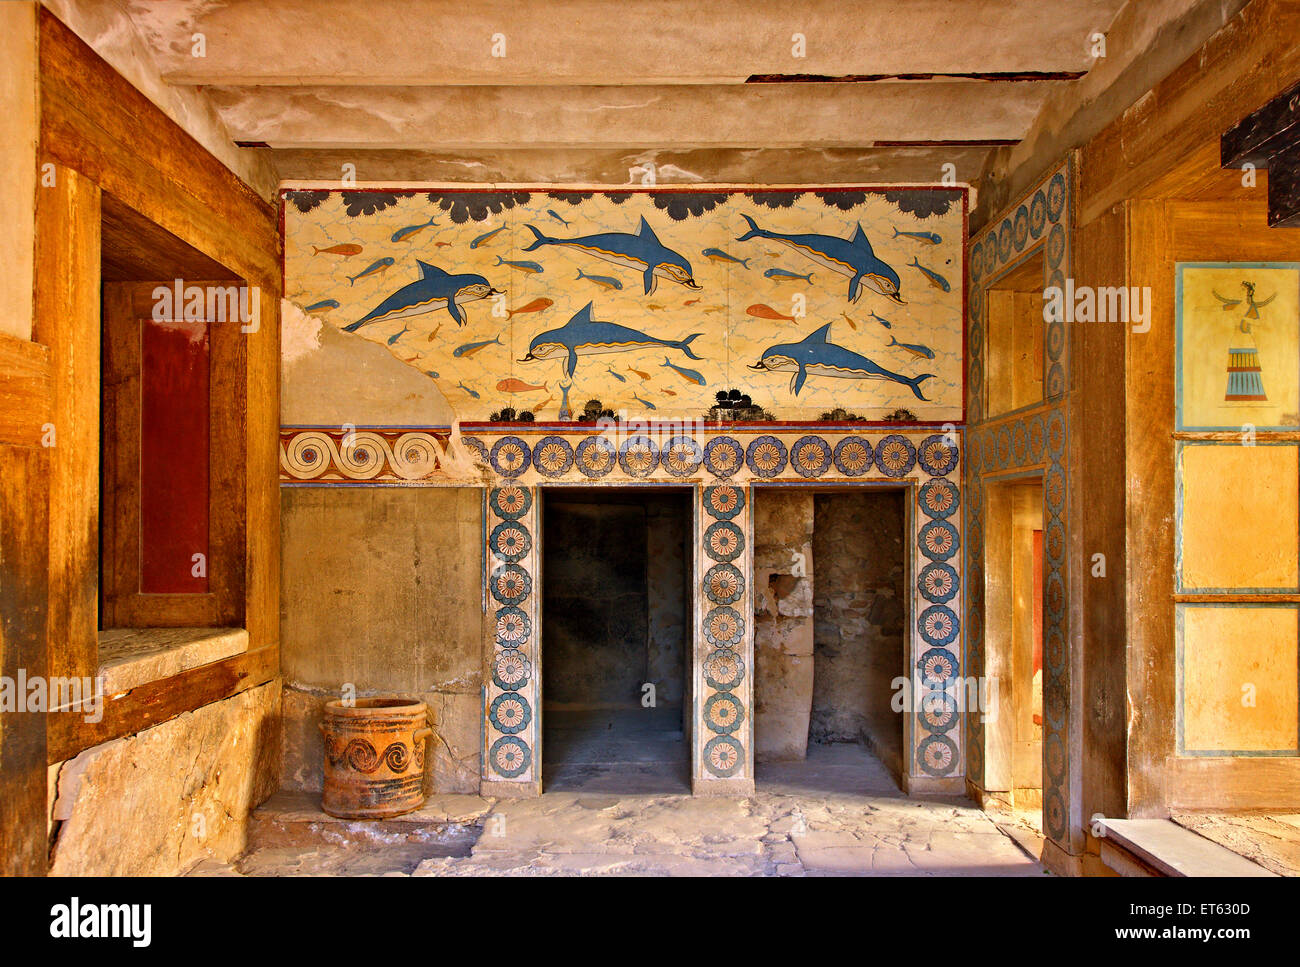 La fresque des dauphins de l'imprimeur de la Pine au palais minoen de Knossos, Héraklion, Crète, Grèce Banque D'Images